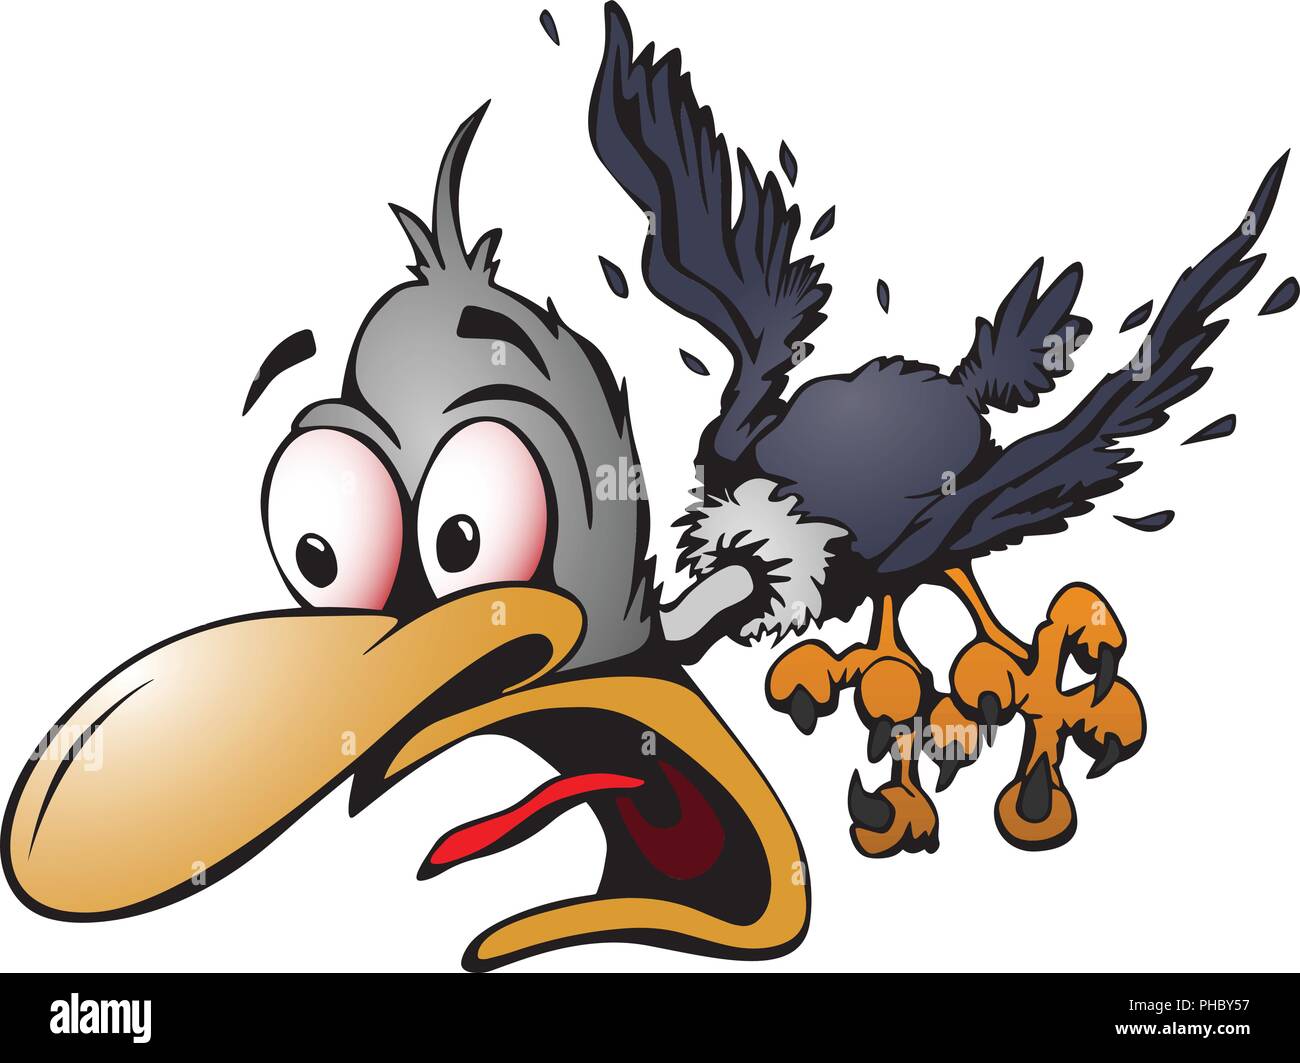 Crazy Cartoon-vogel Vector Illustration mit Schockierten Ausdruck, Fliegen, lose Federn, große Augen, volle Farbe cartoon Grafik Stock Vektor